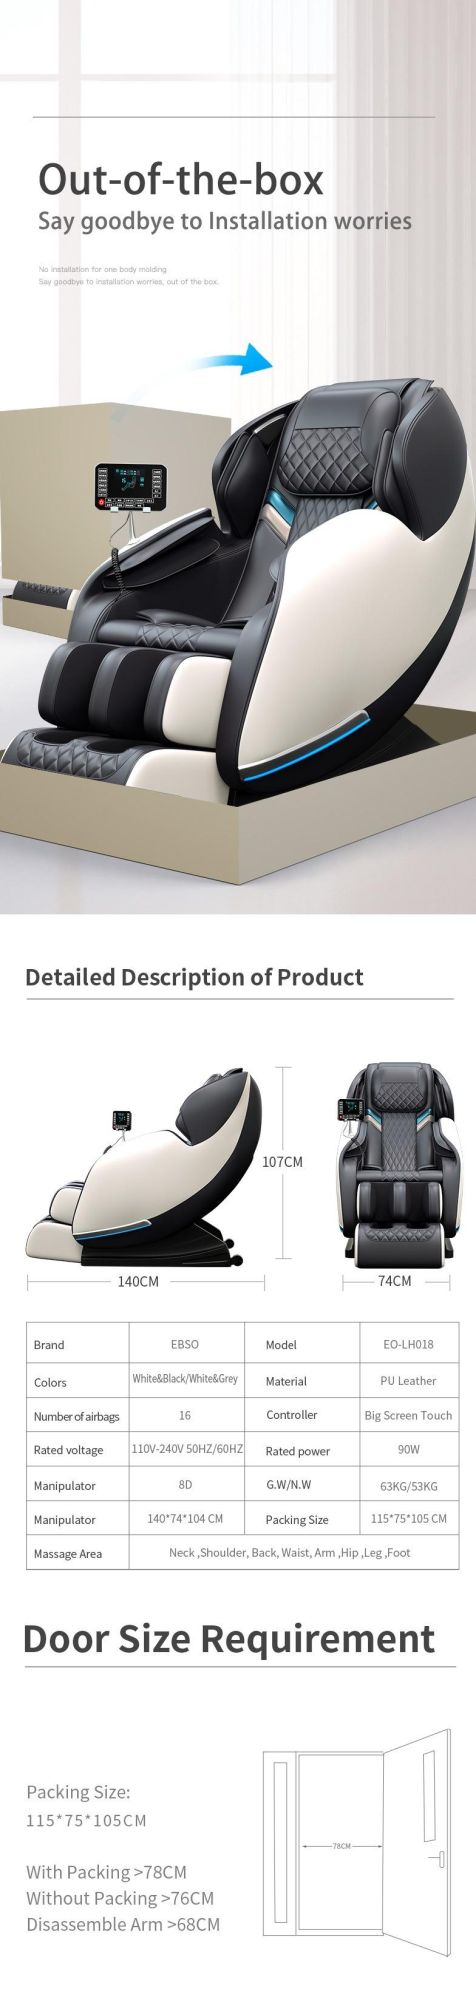 Luxury Robotic Modern Design Massage Chair with Zero Gravity